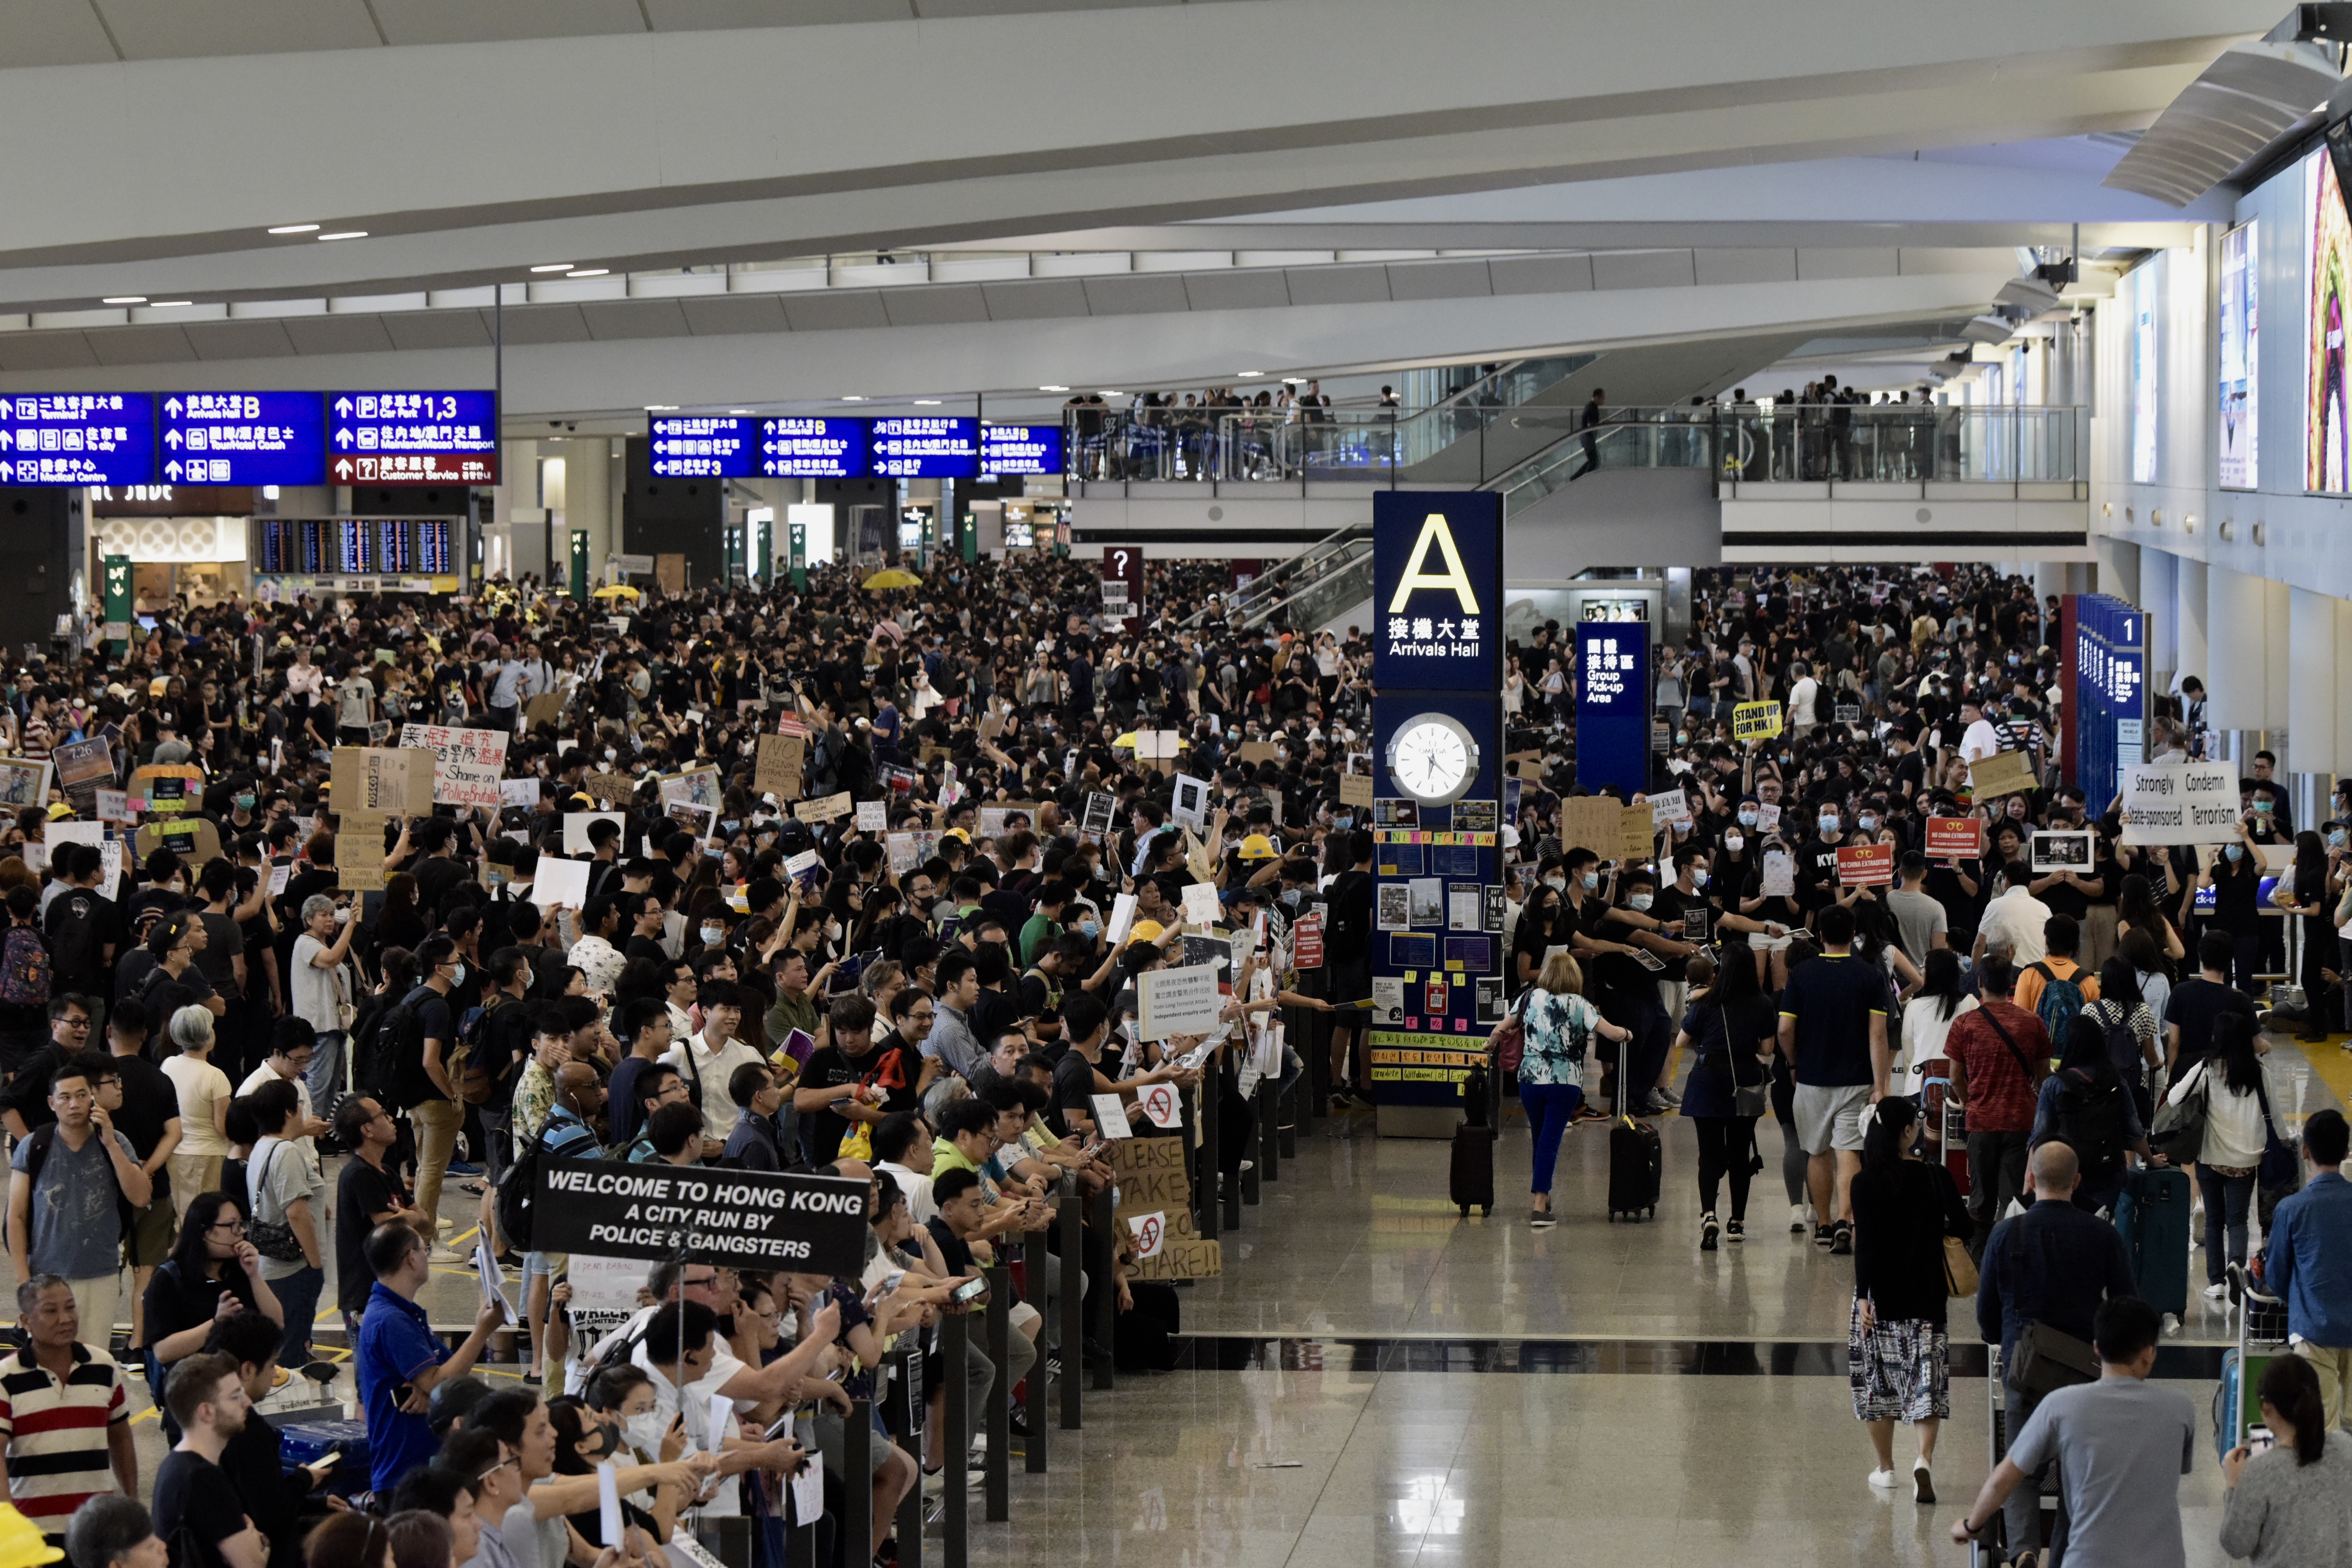 7月26日A示威者於接機大堂的ABB兩個出口外聚集A影響市民及旅客出行C]中新社資料圖片^